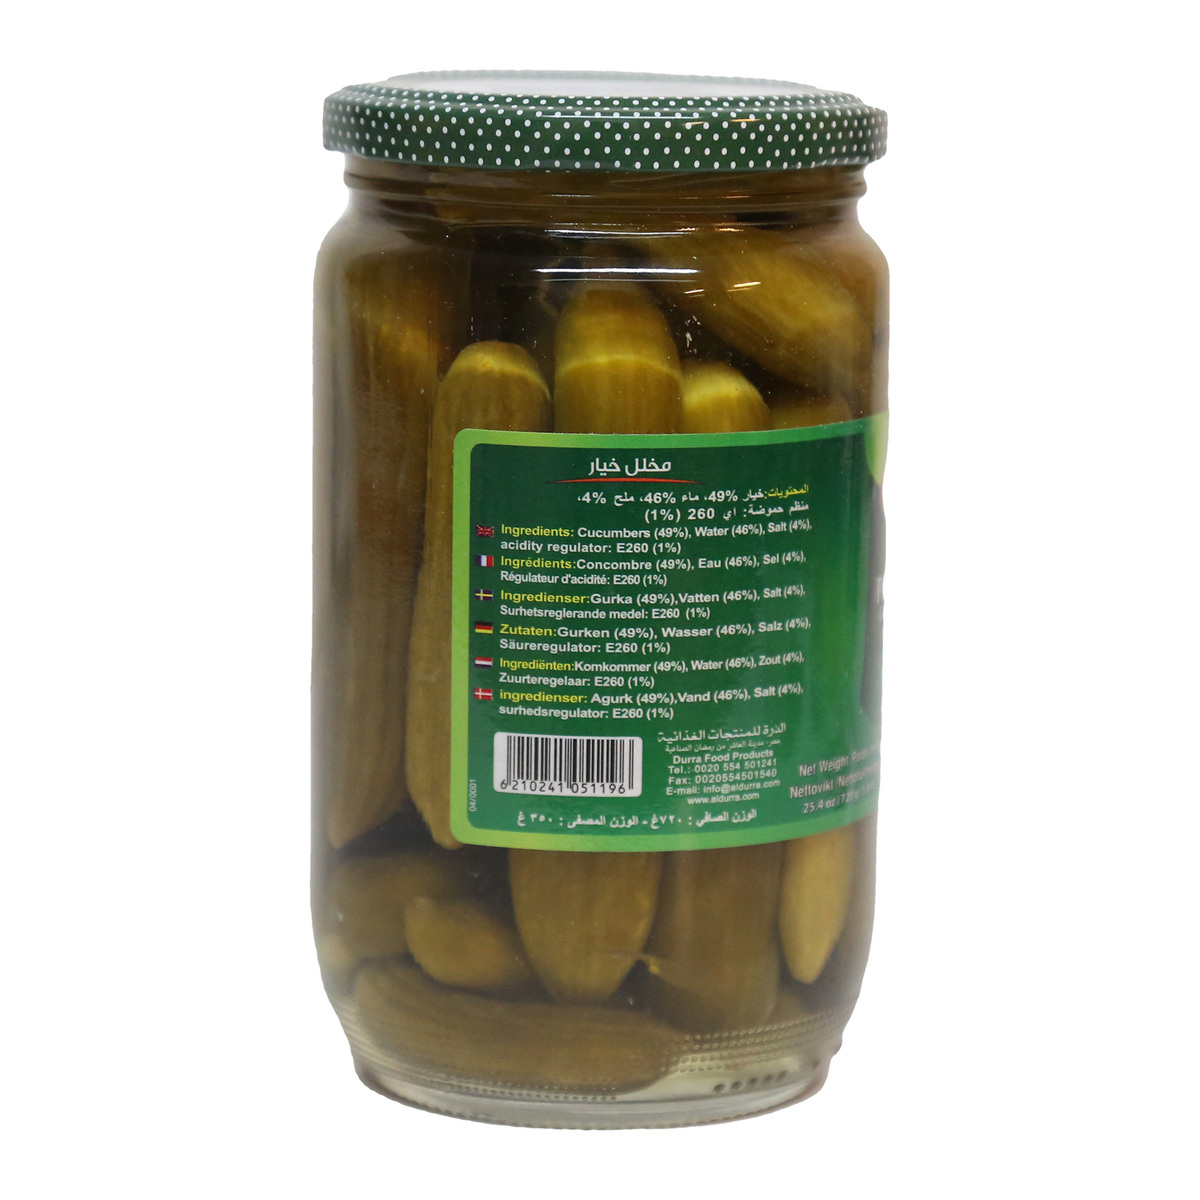 Al Durra Cucumber Pickle 710g